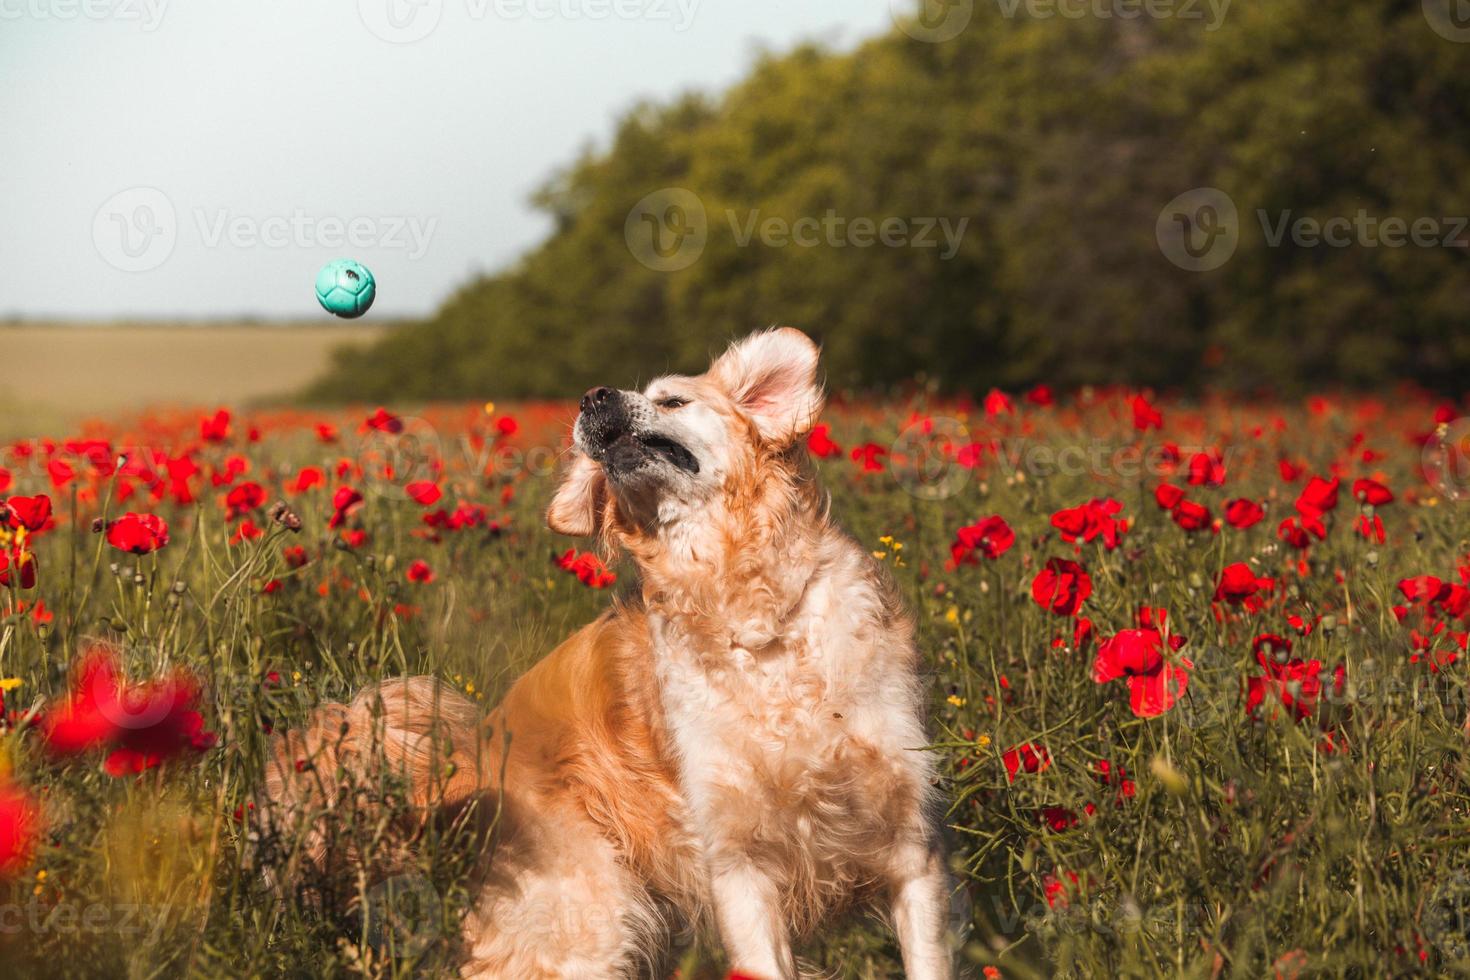 perro labrador retriever. perro golden retriever sobre hierba. adorable perro en flores de amapola. foto